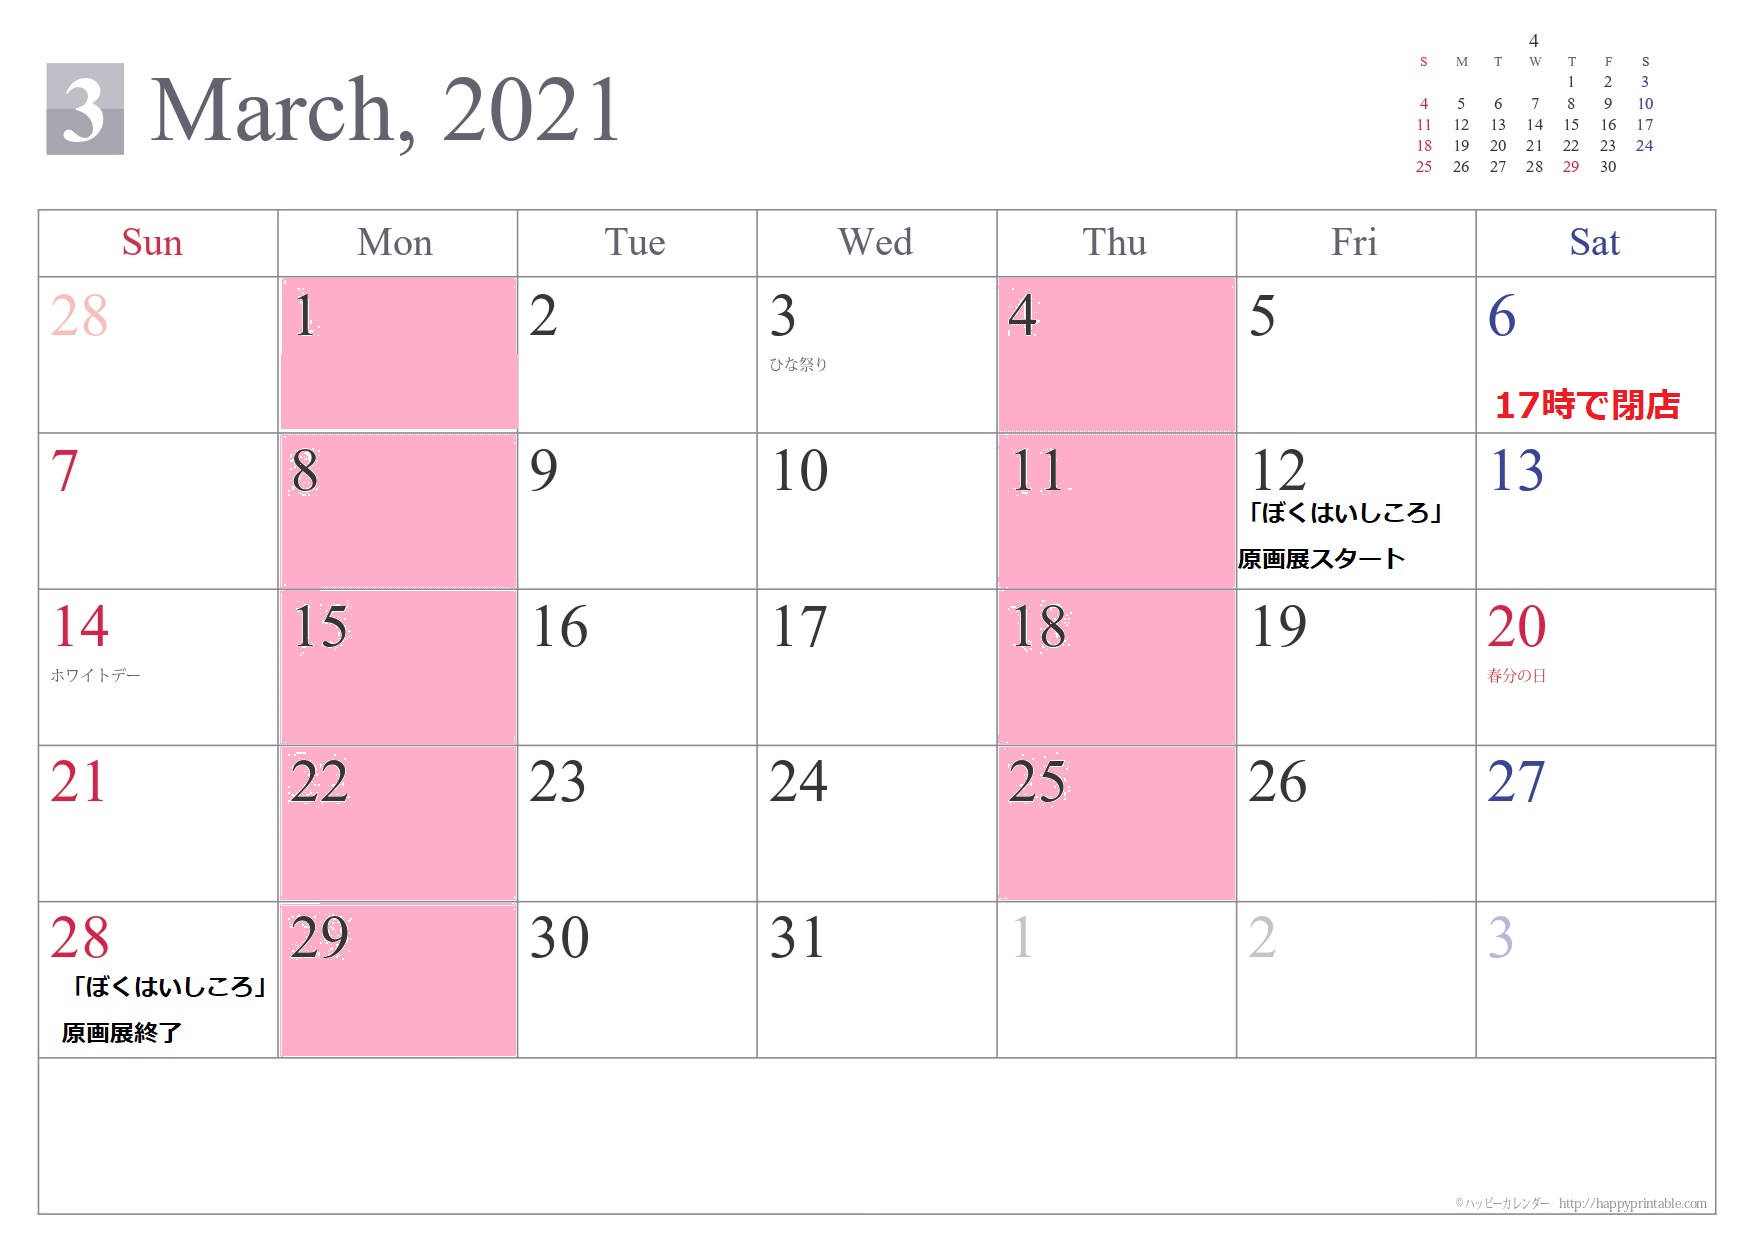 3月の店休カレンダーです